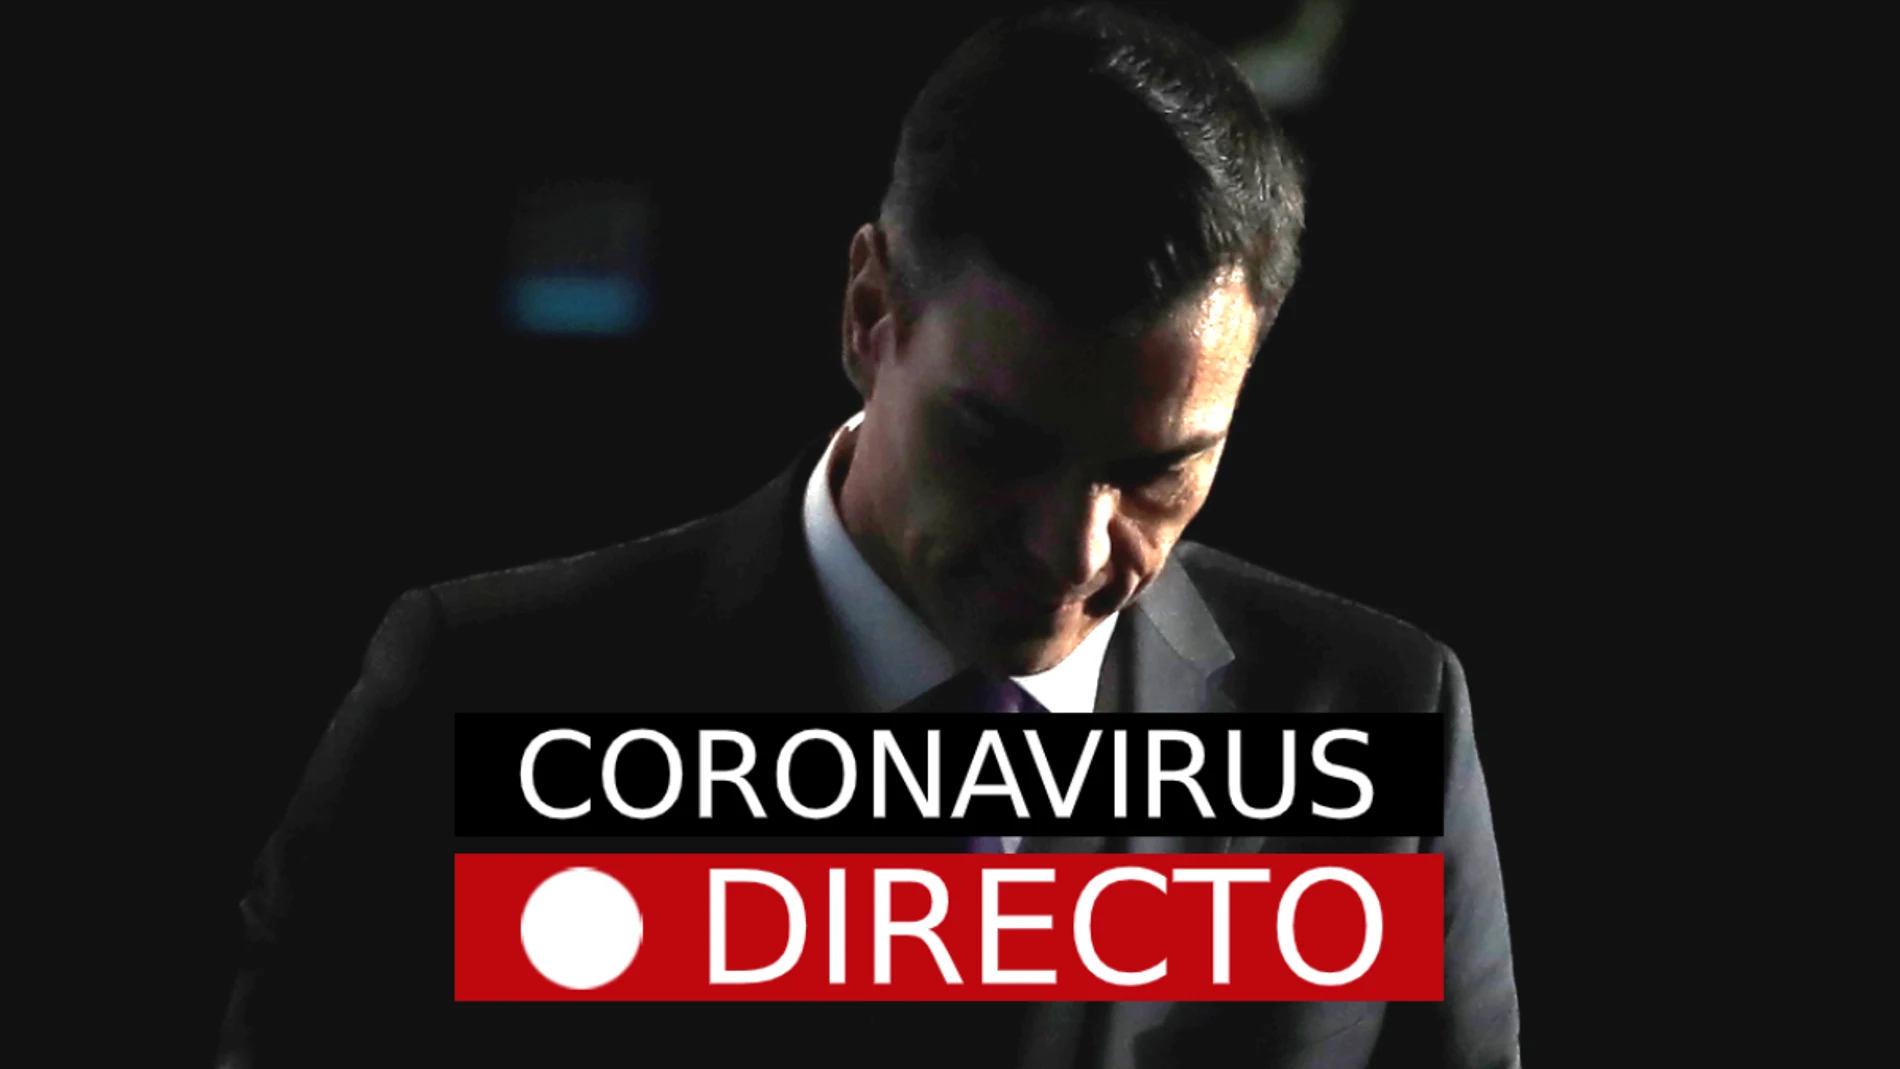 La última hora del coronavirus, en laSexta.com